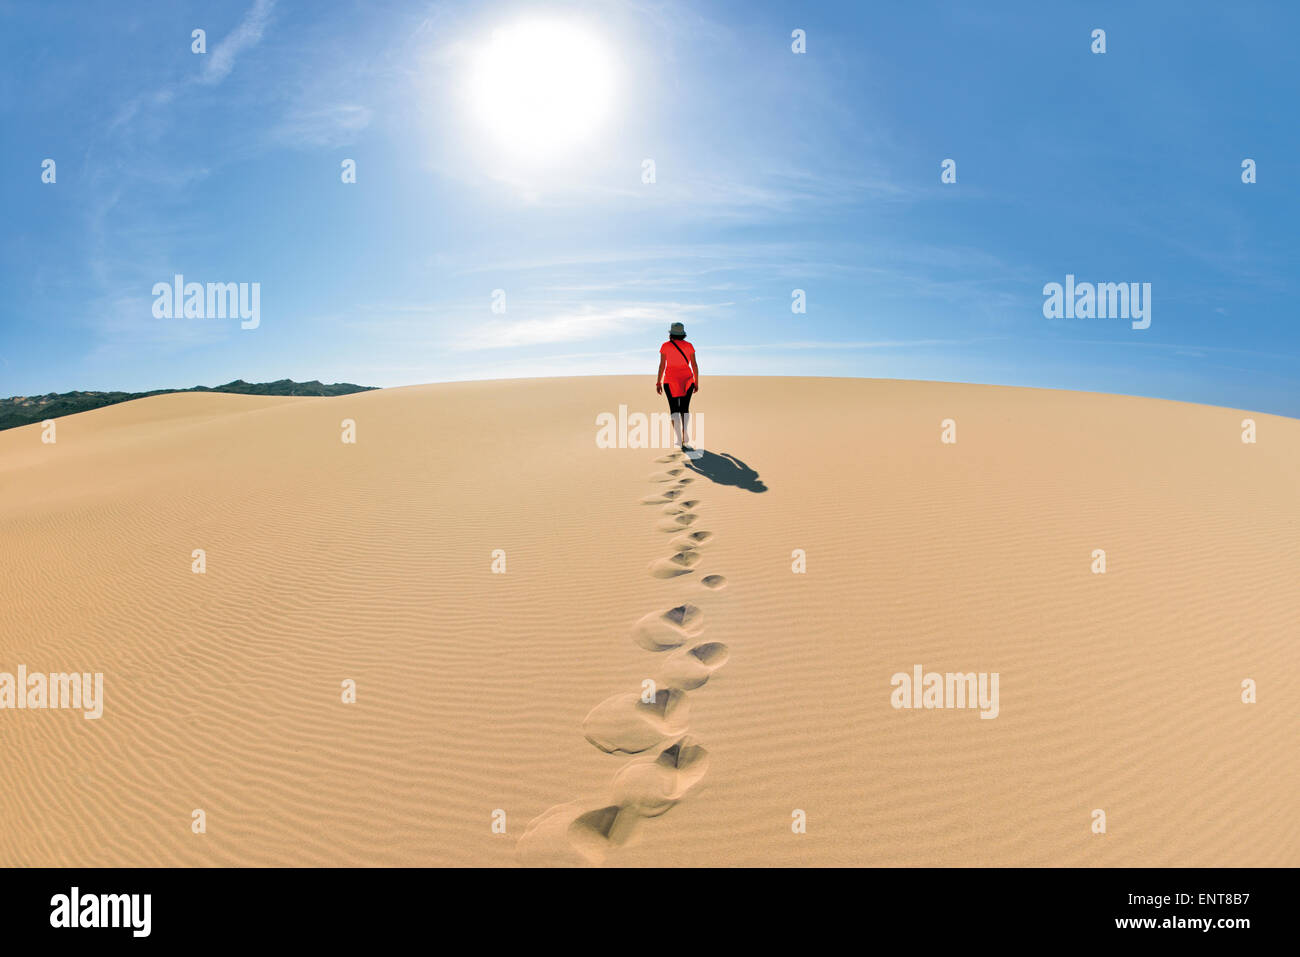 Portugal, Algarve: Frau zu Fuß auf einer Sanddüne in Richtung der Sonne Stockfoto